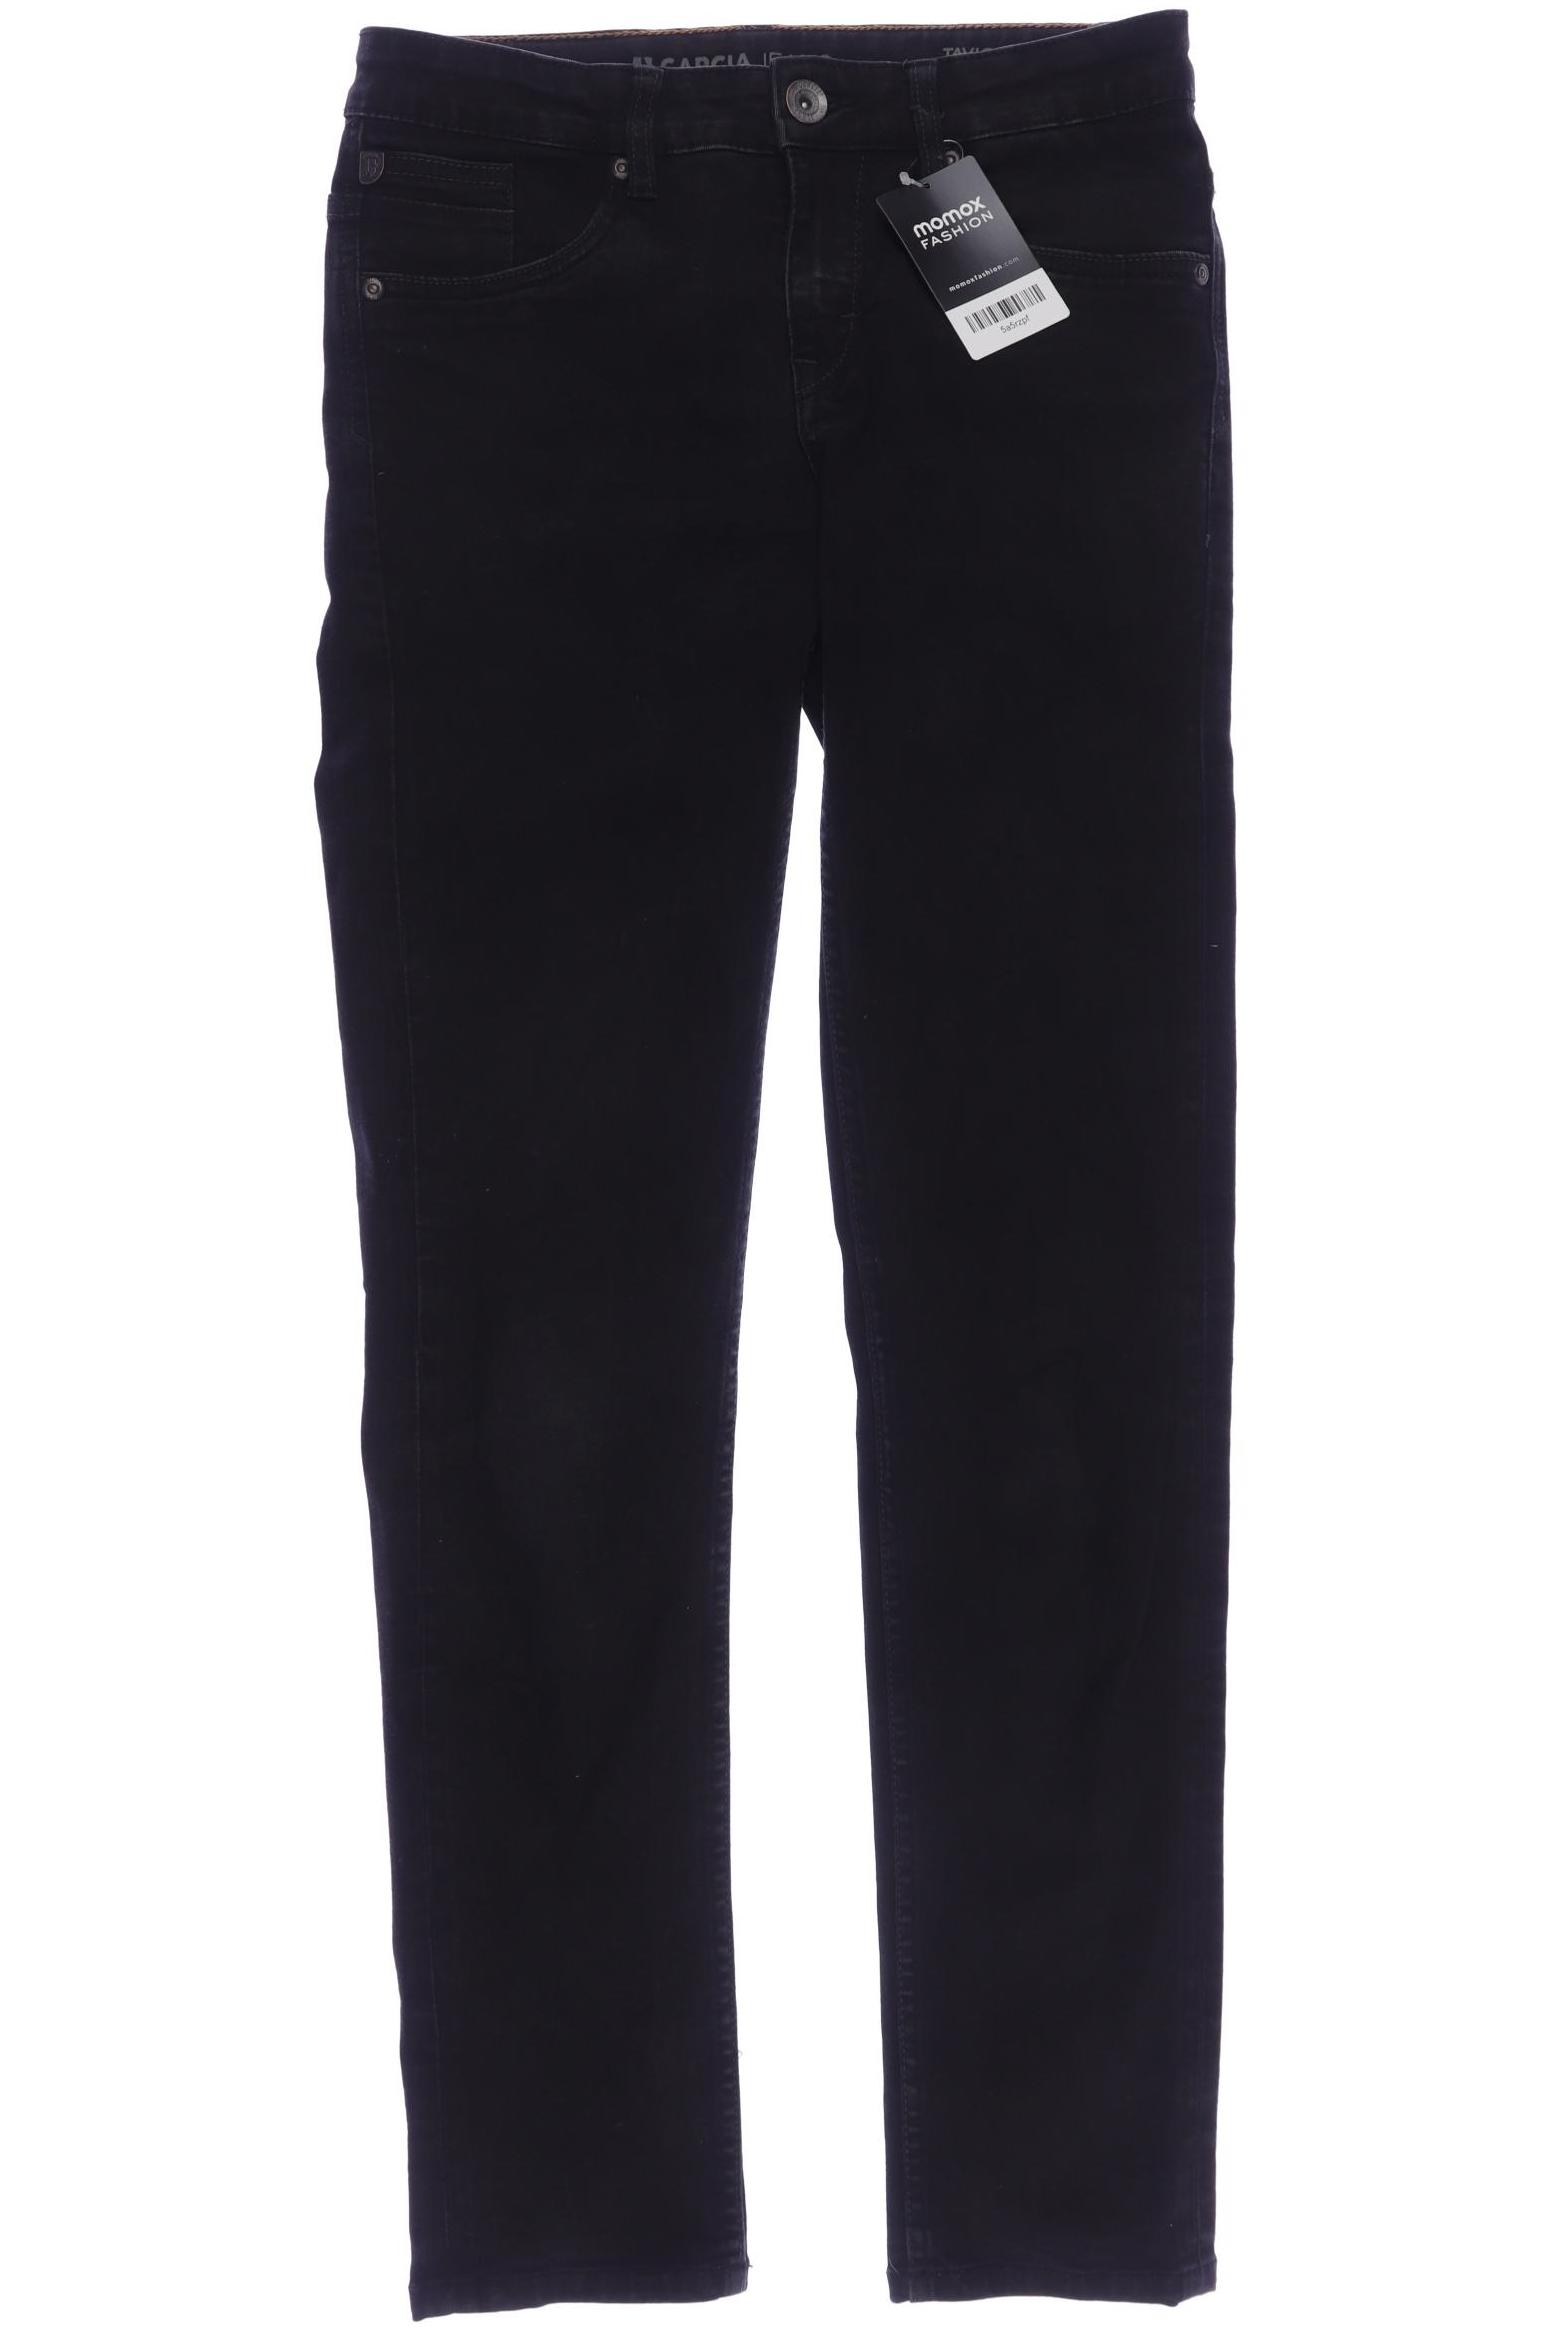 Garcia Damen Jeans, schwarz, Gr. 164 von GARCIA